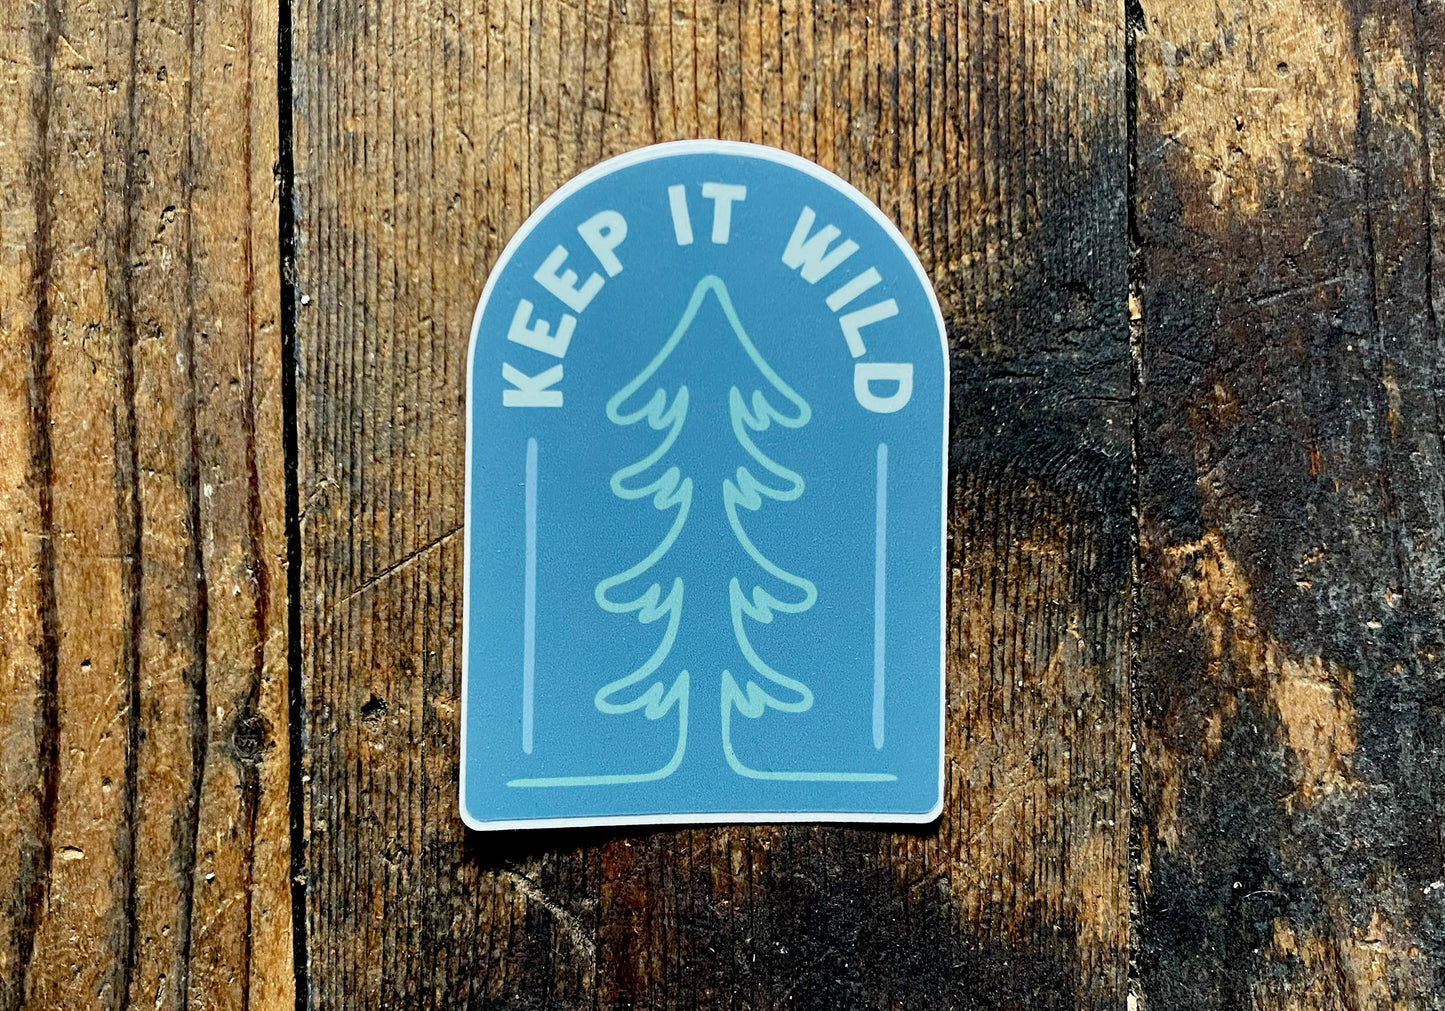 Keep It Wild Outdoor-Inspired 3" Sticker